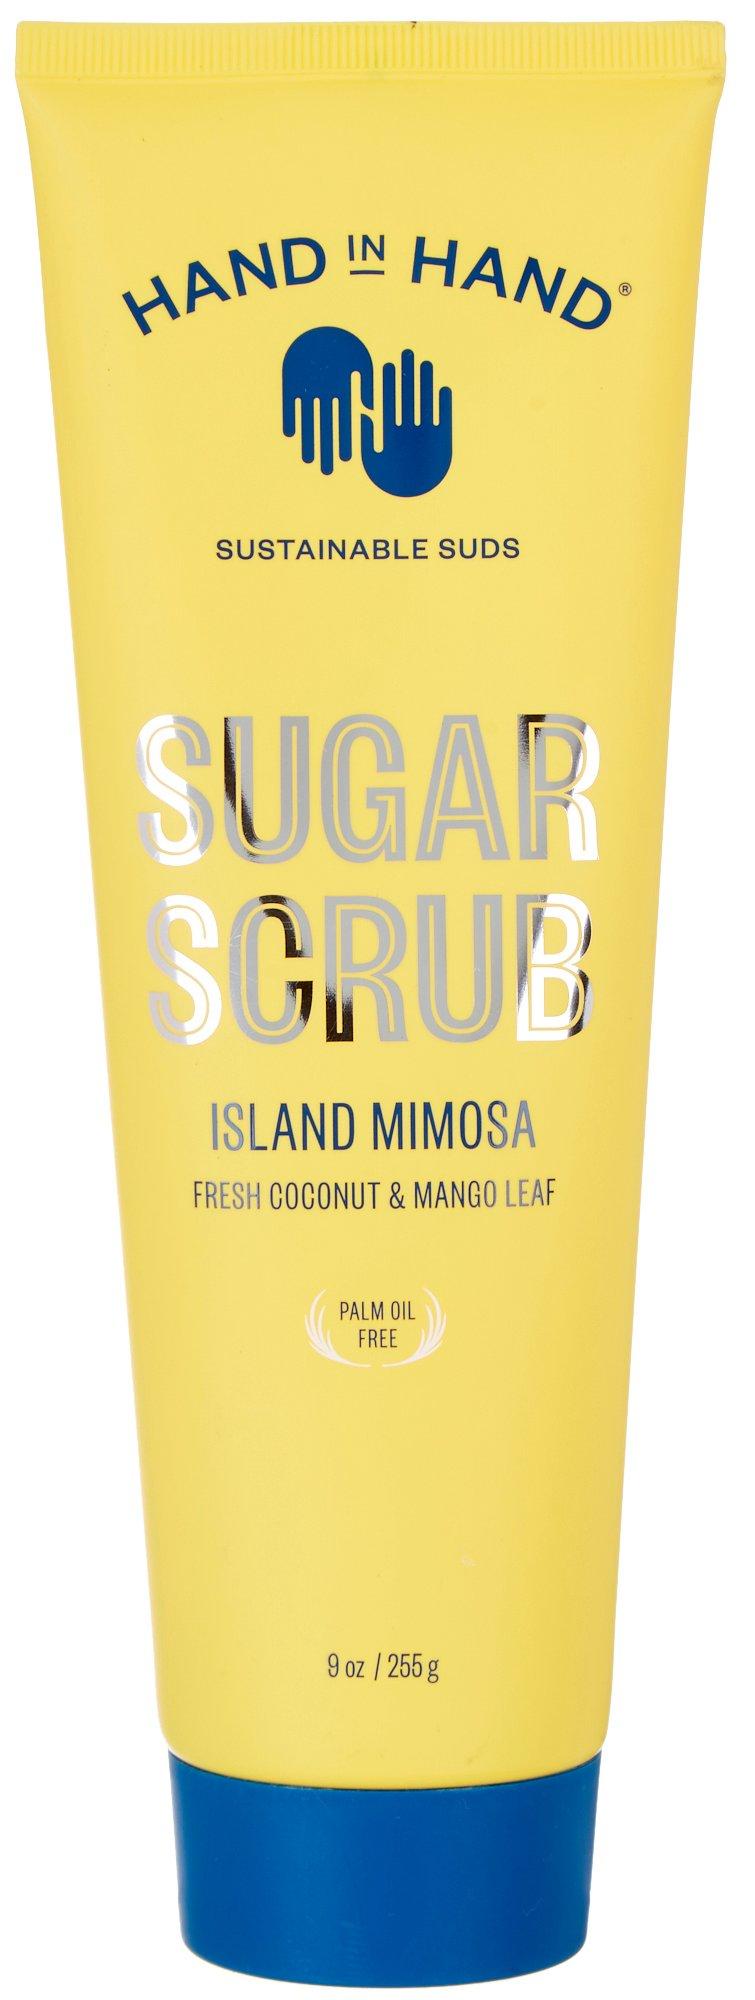 Island Mimosa Sugar Scrub 9 Oz.